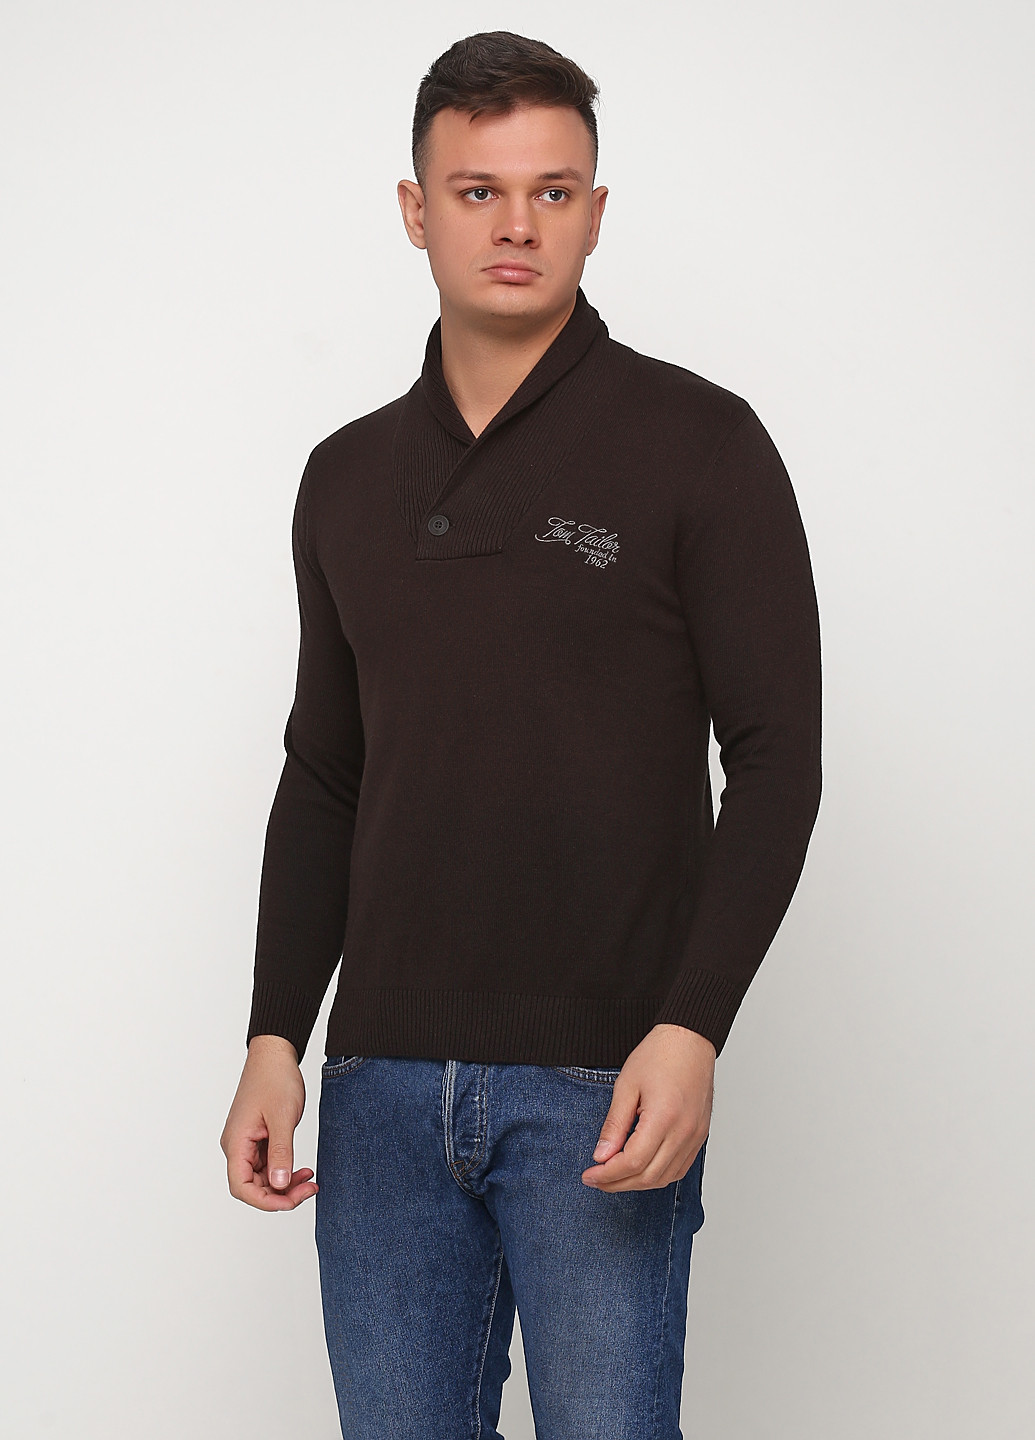 Коричневый демисезонный пуловер пуловер Tom Tailor